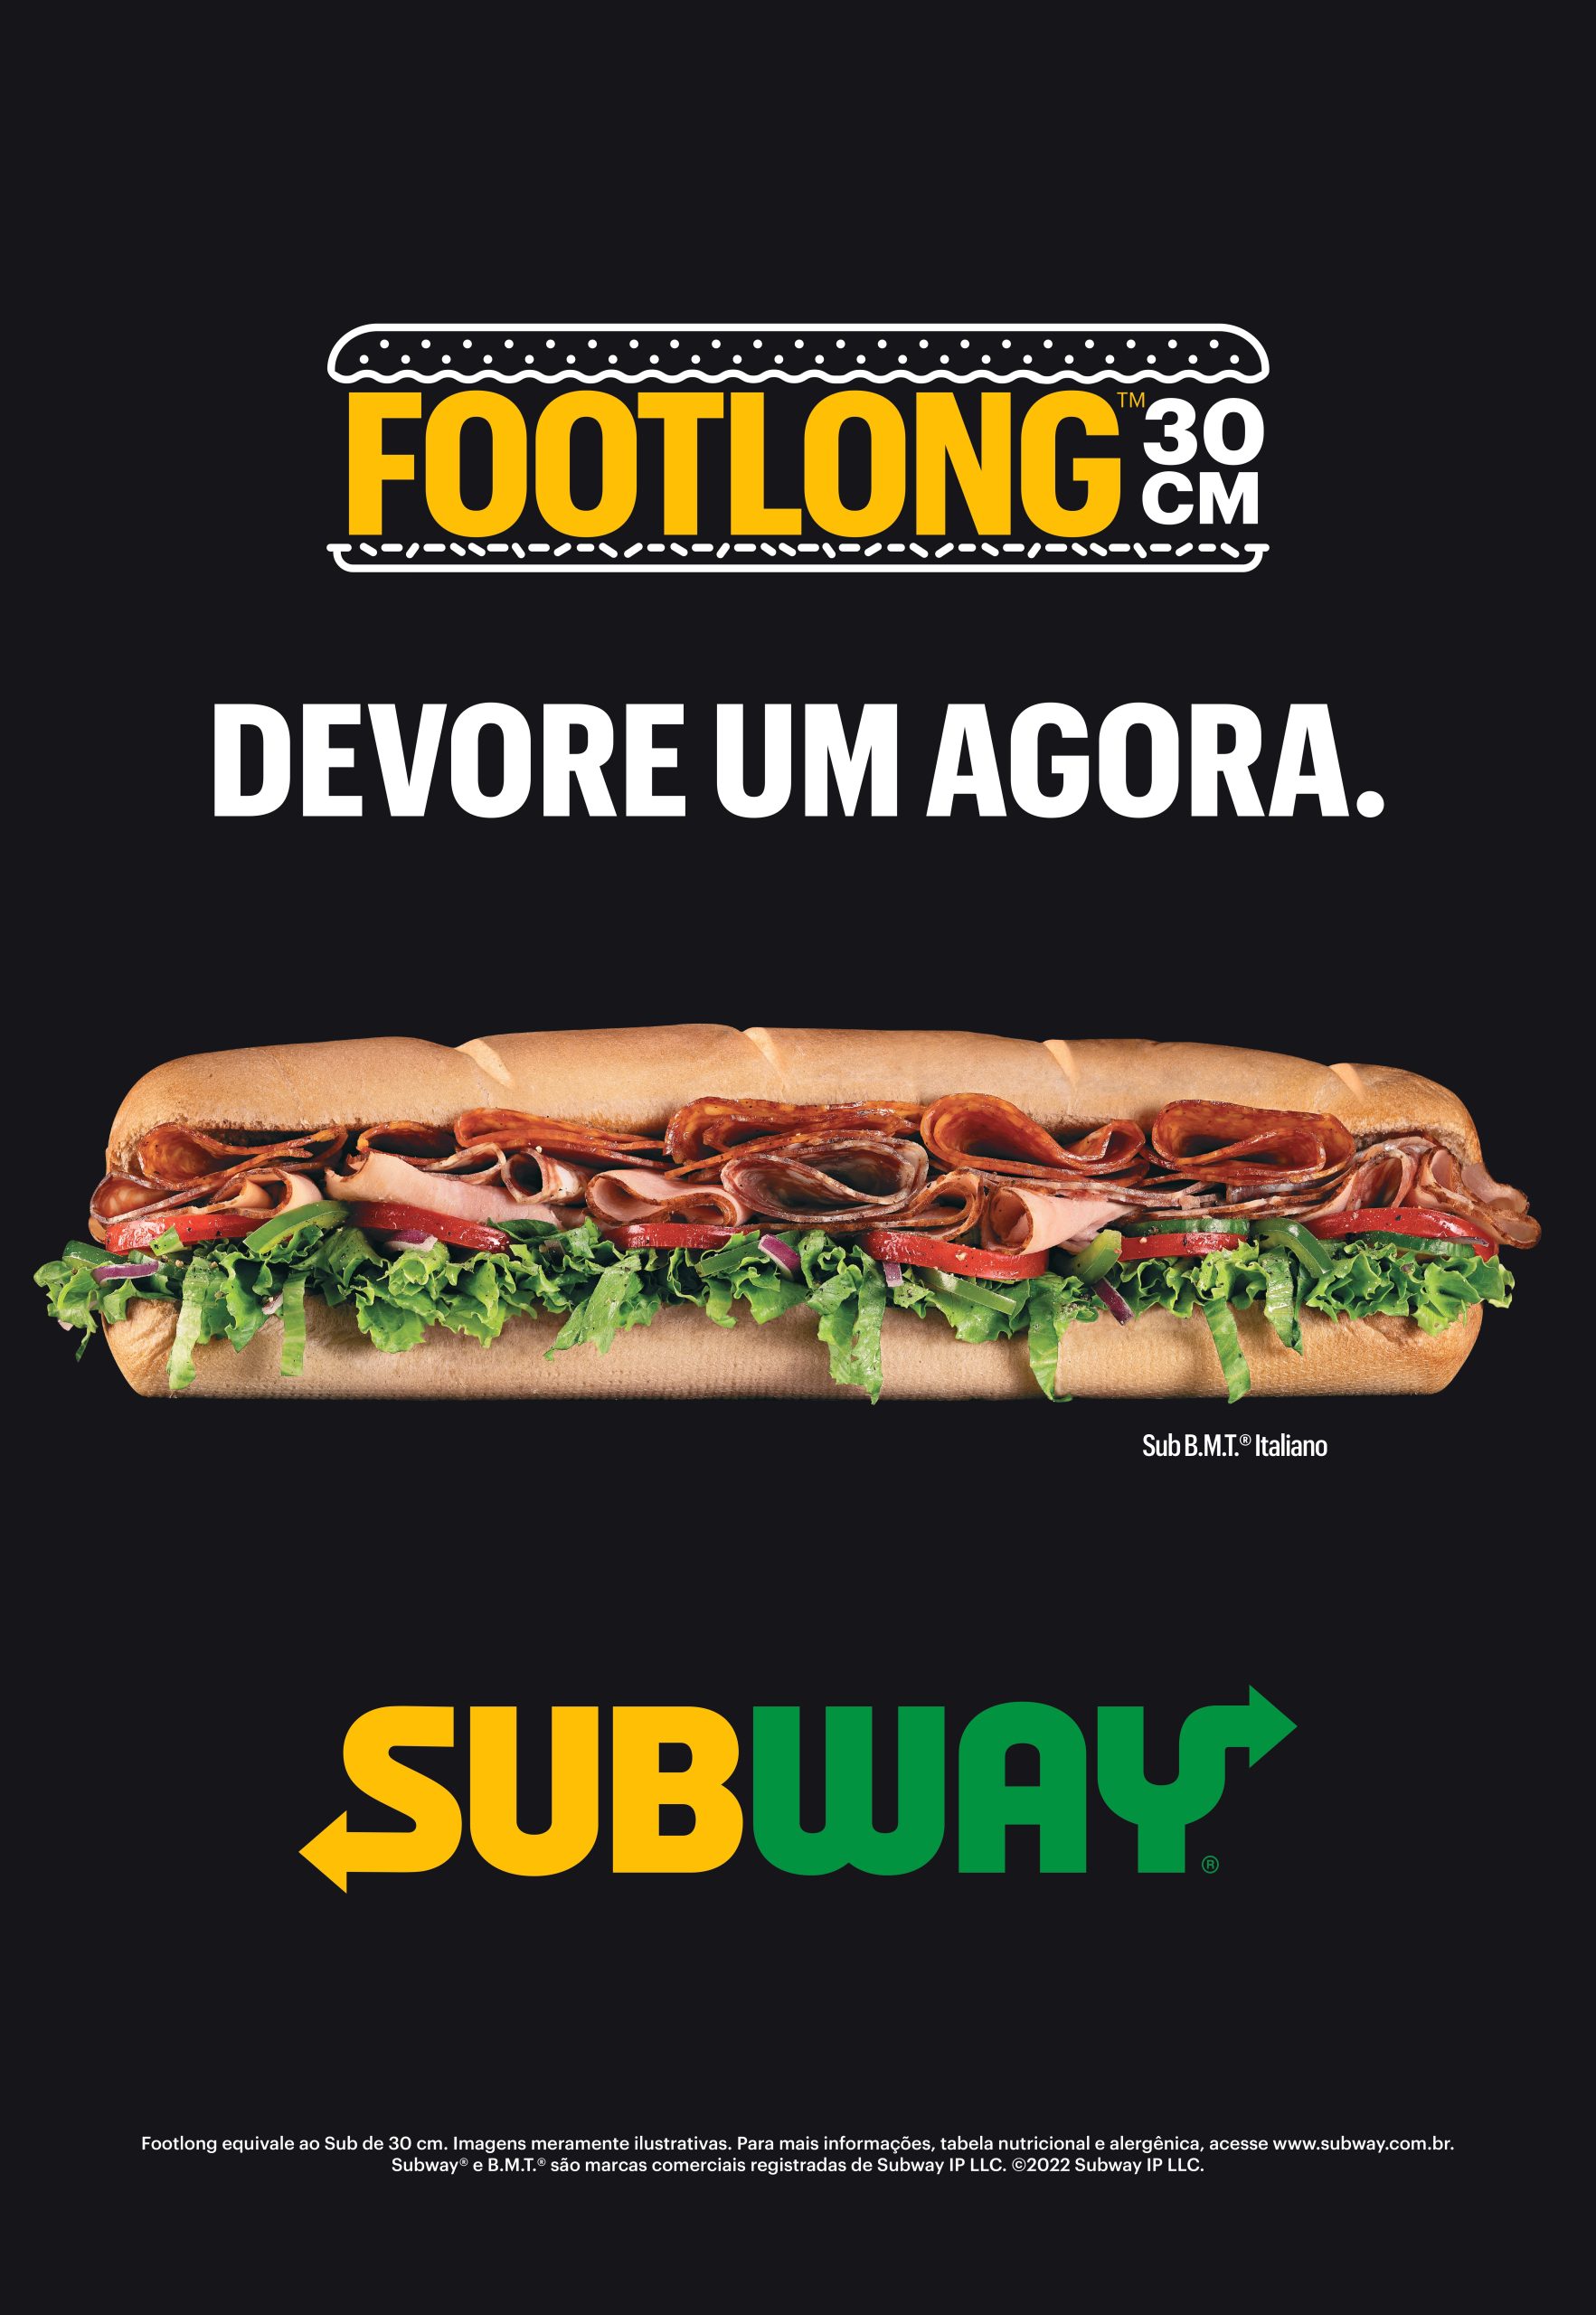 Subway Brasil - Tudo que é perfeito a gente pega com as